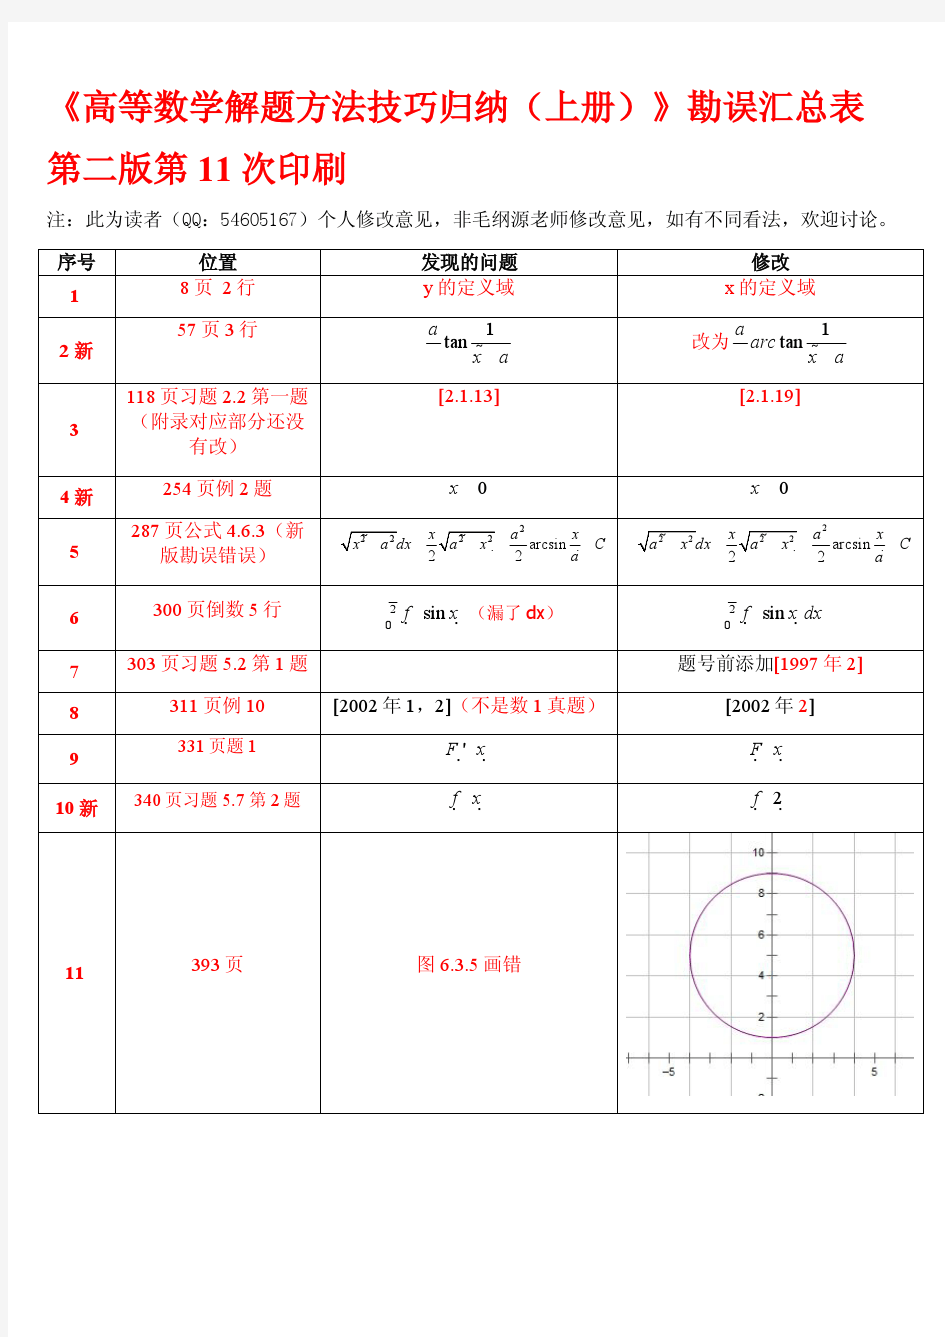 《高等数学解题方法技巧归纳(上册)》(第11次印刷勘误)勘误汇总表